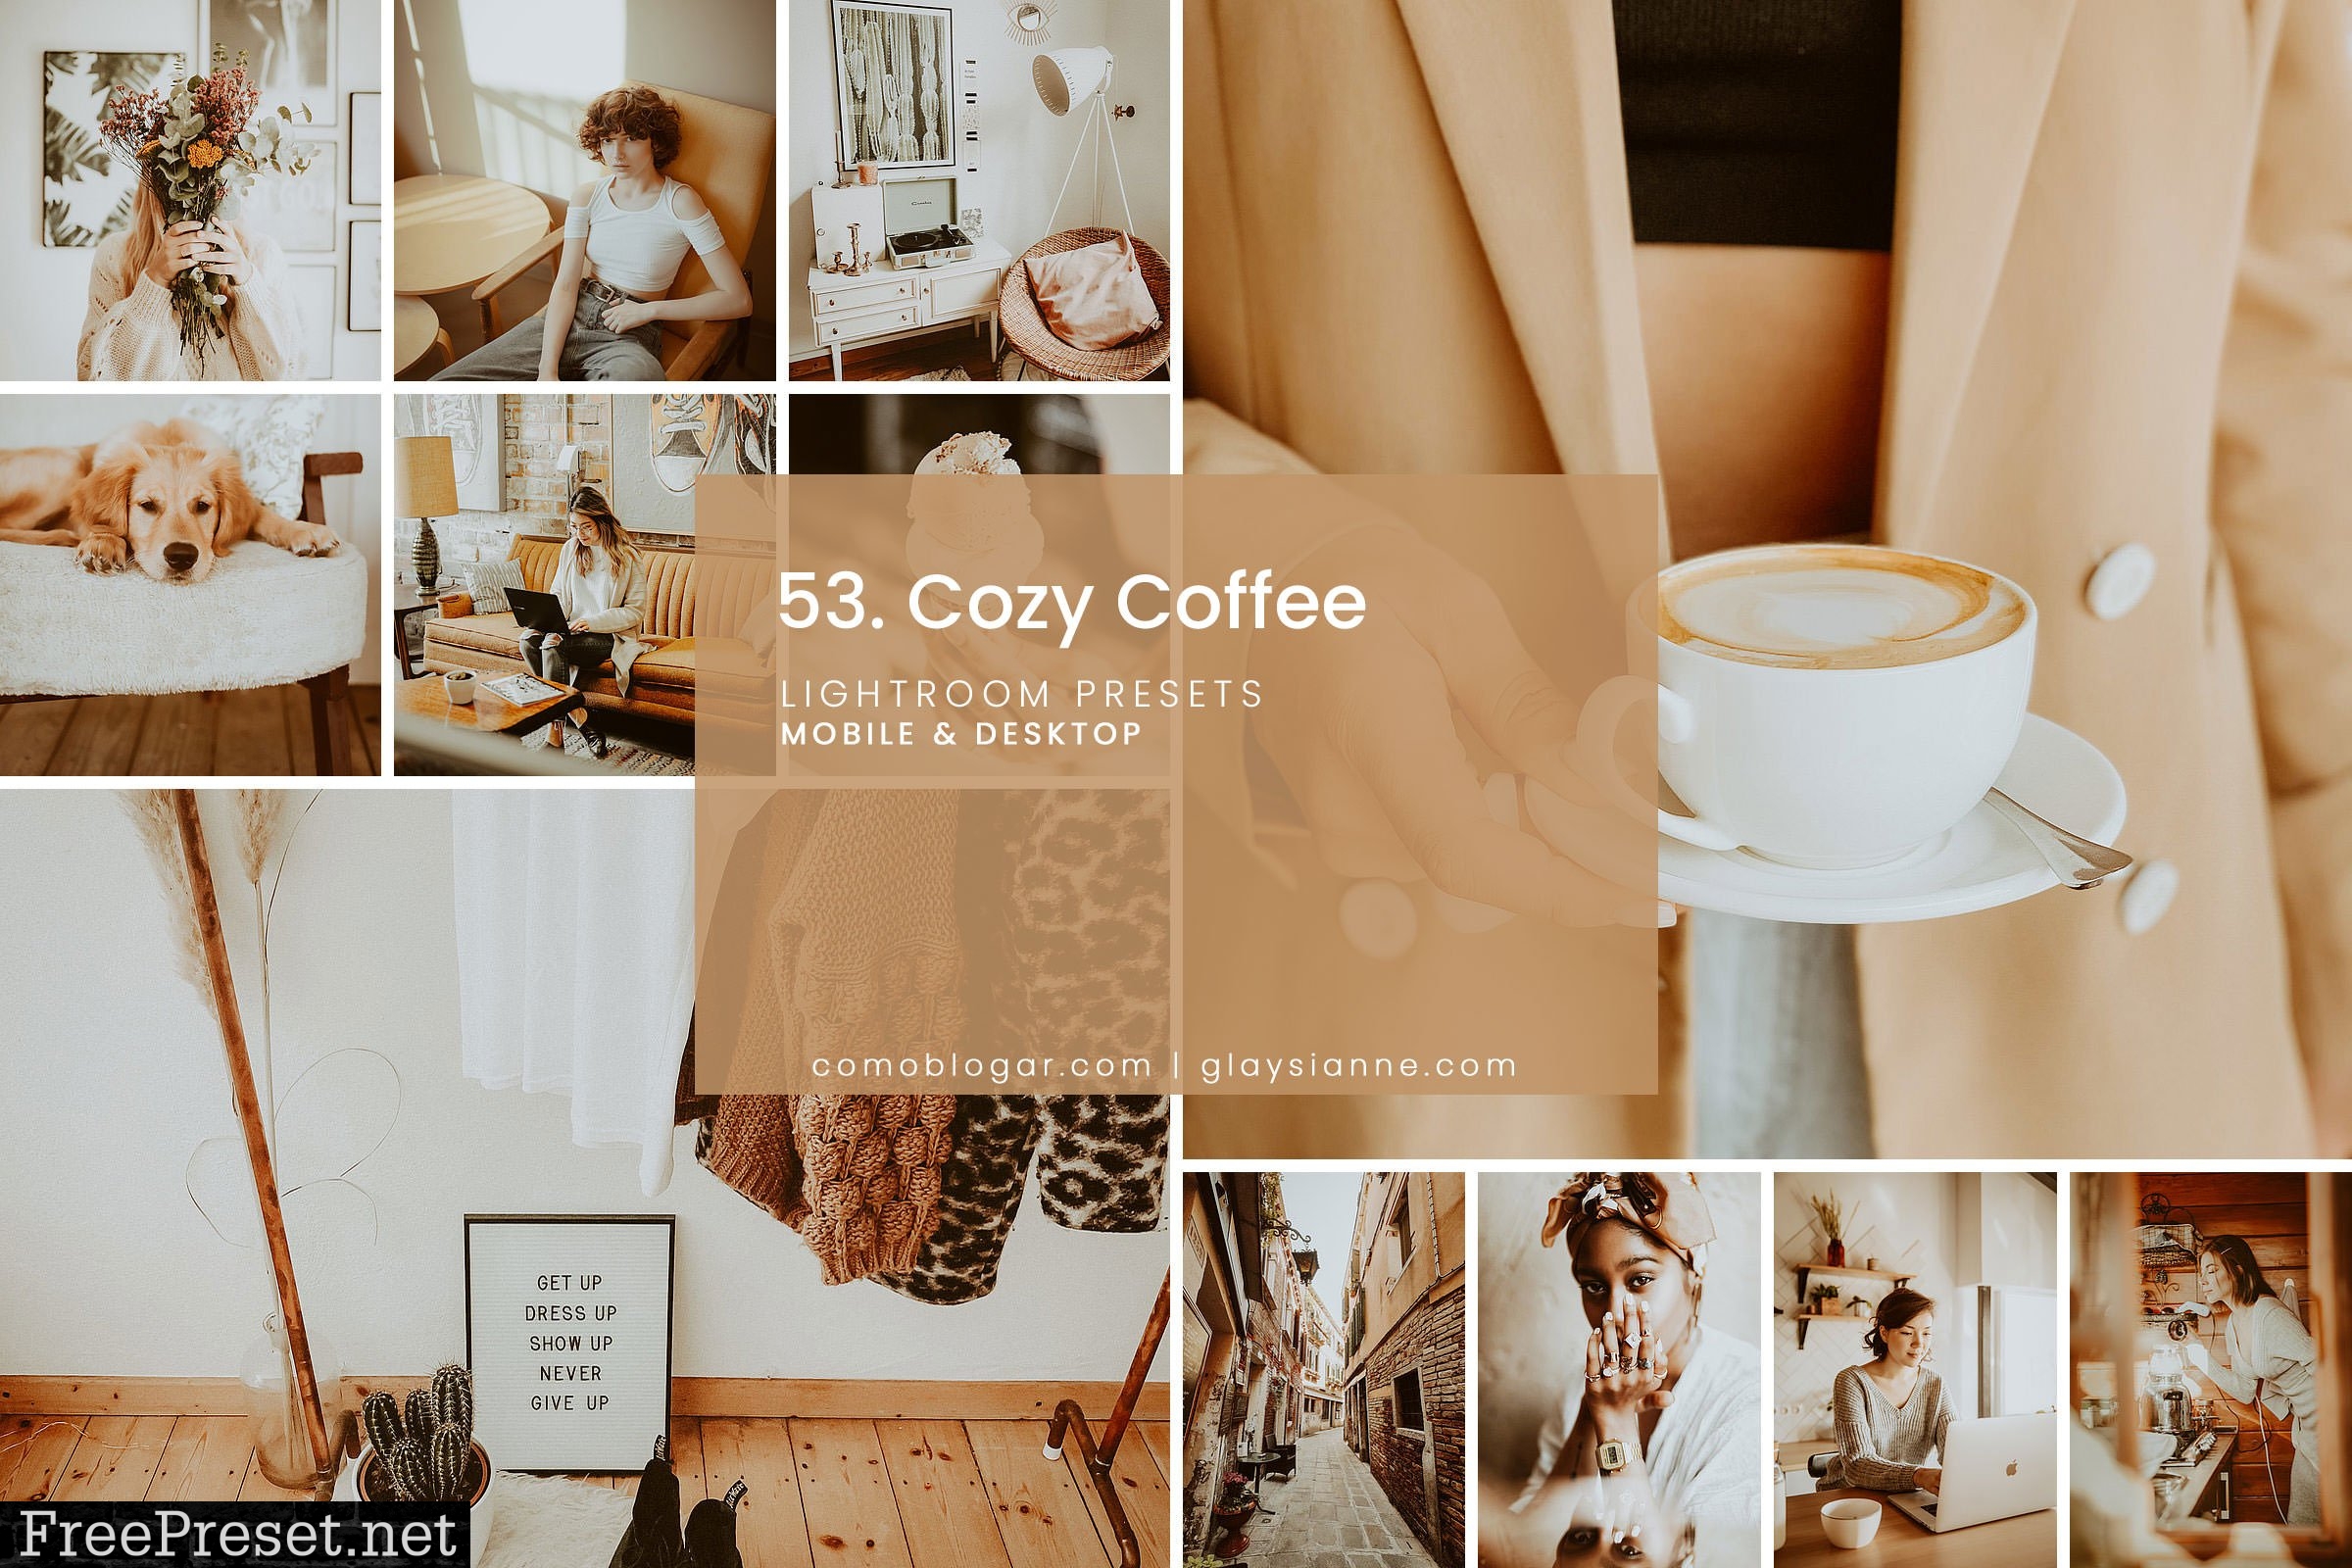 53. Cozy Coffee Lightroom presets